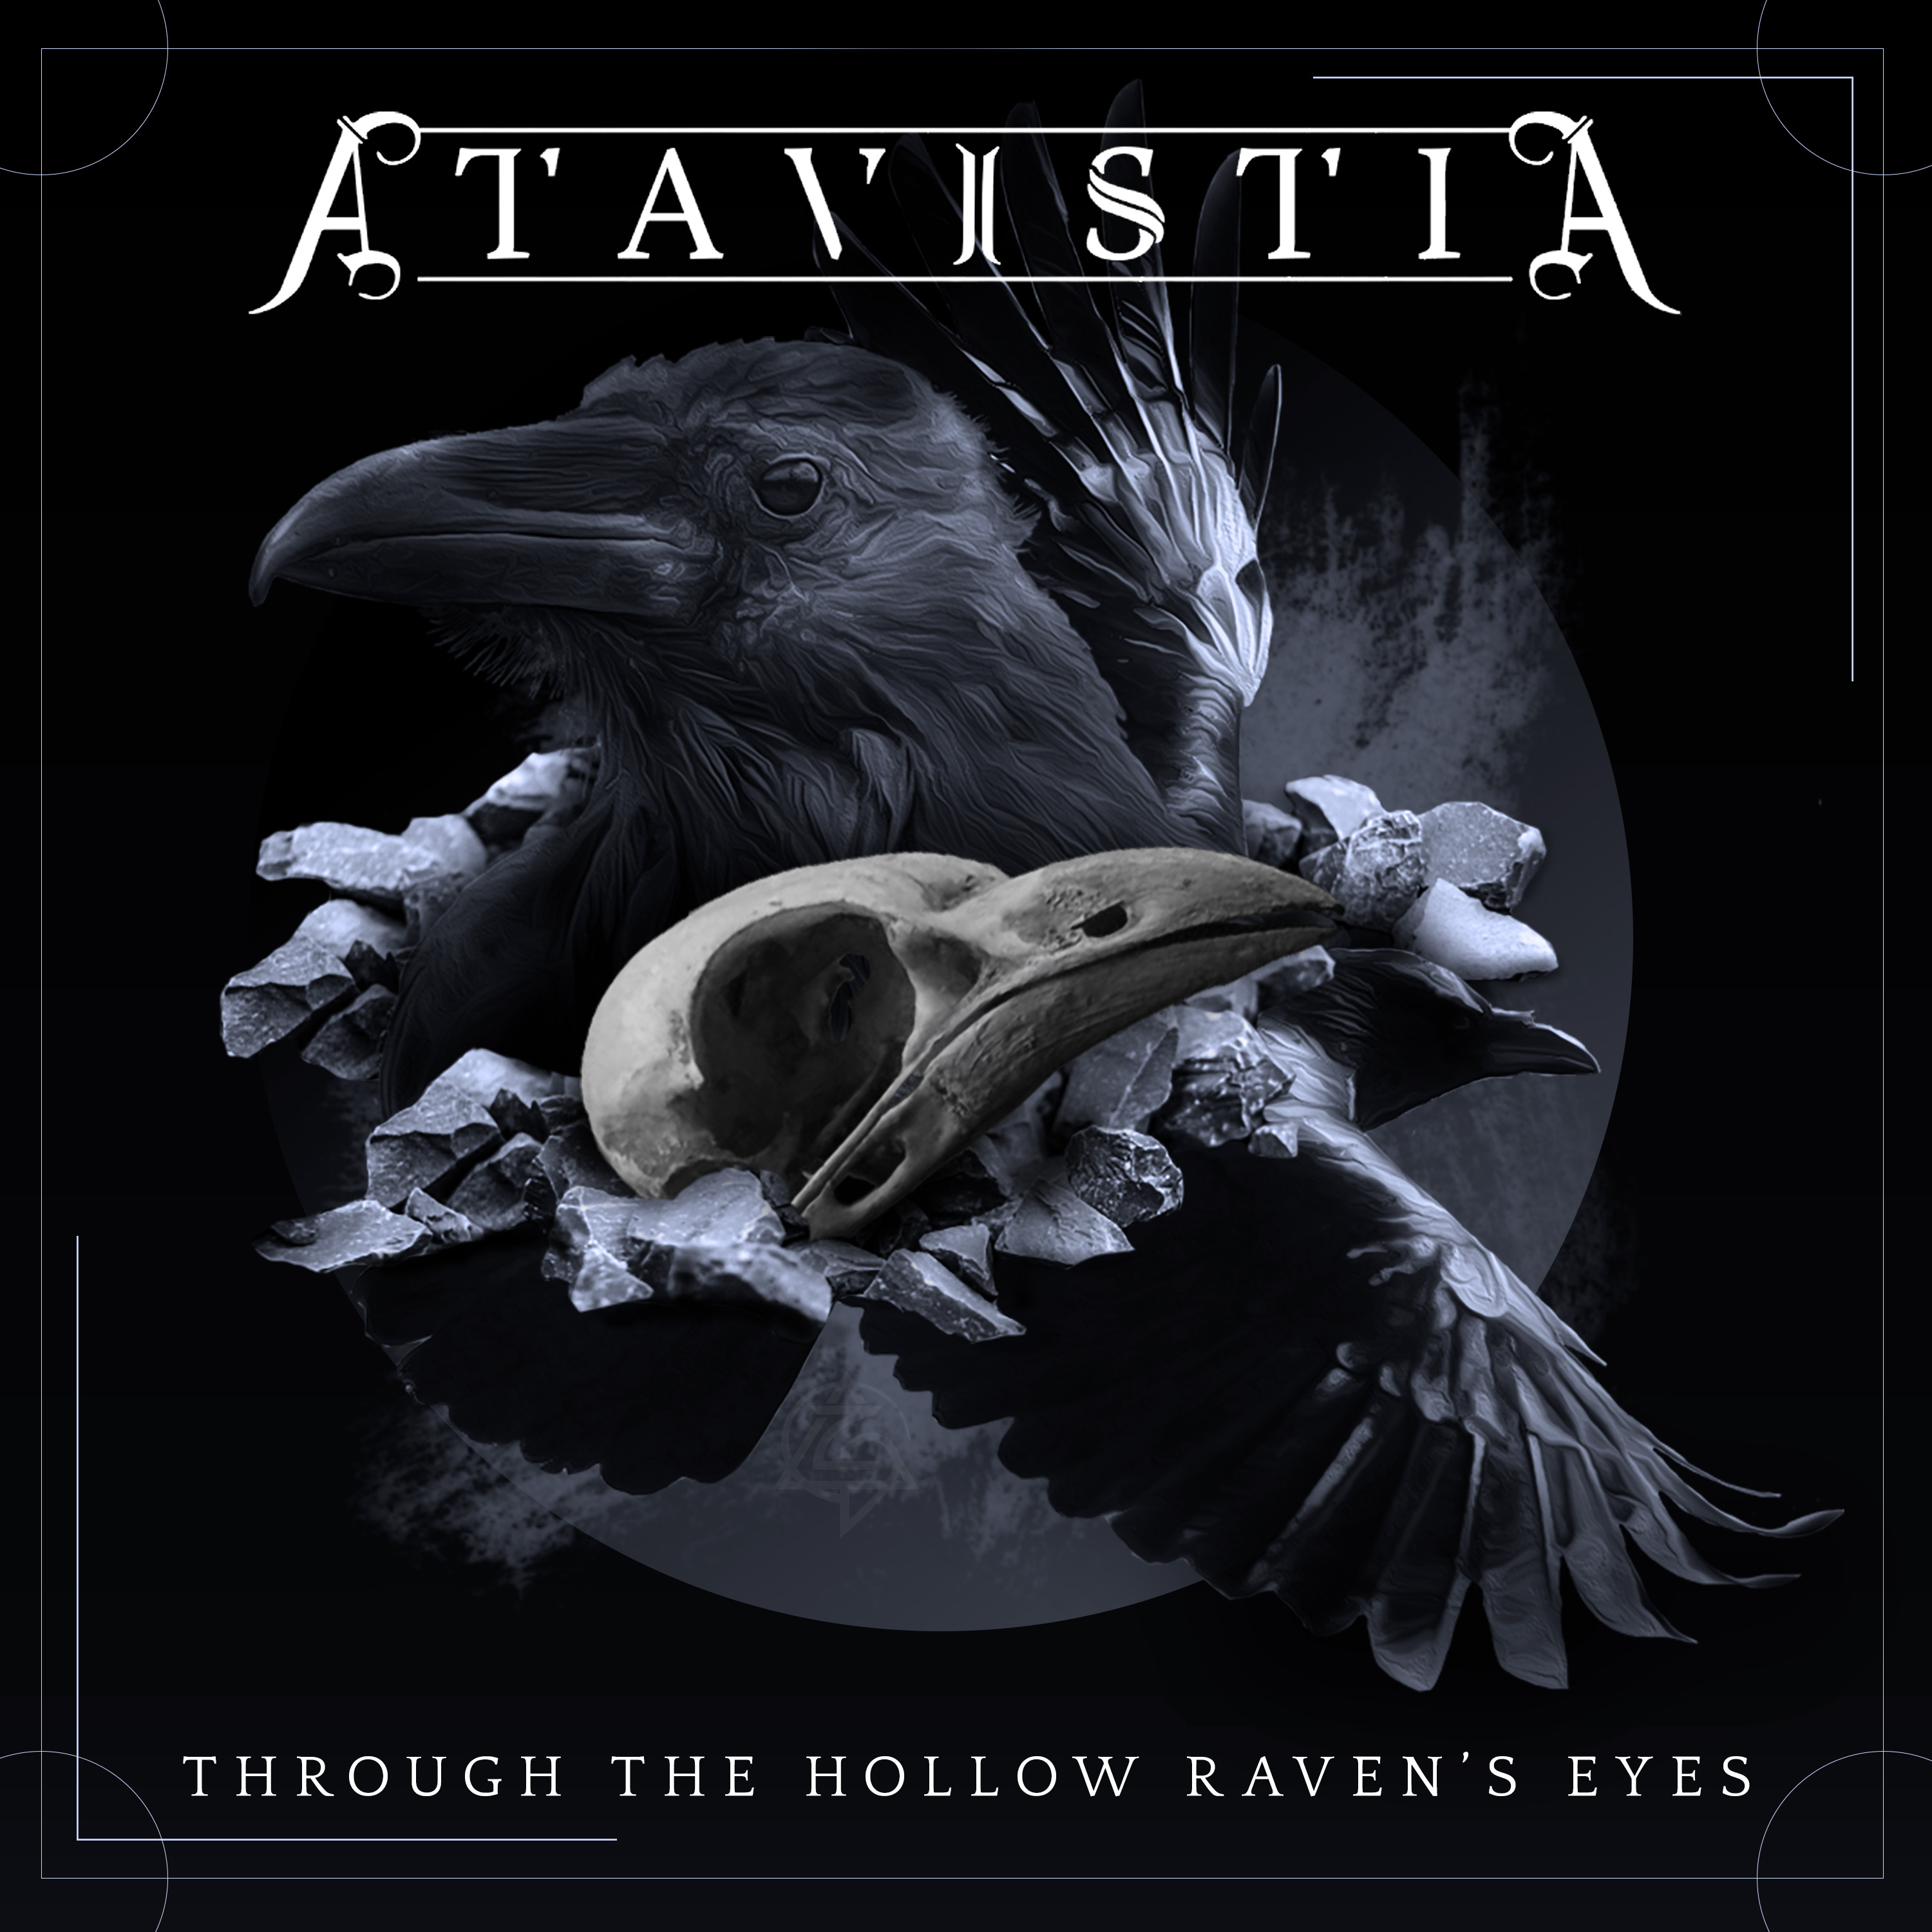 Atavistia's latest single Through The Hollow Raven's Eyes